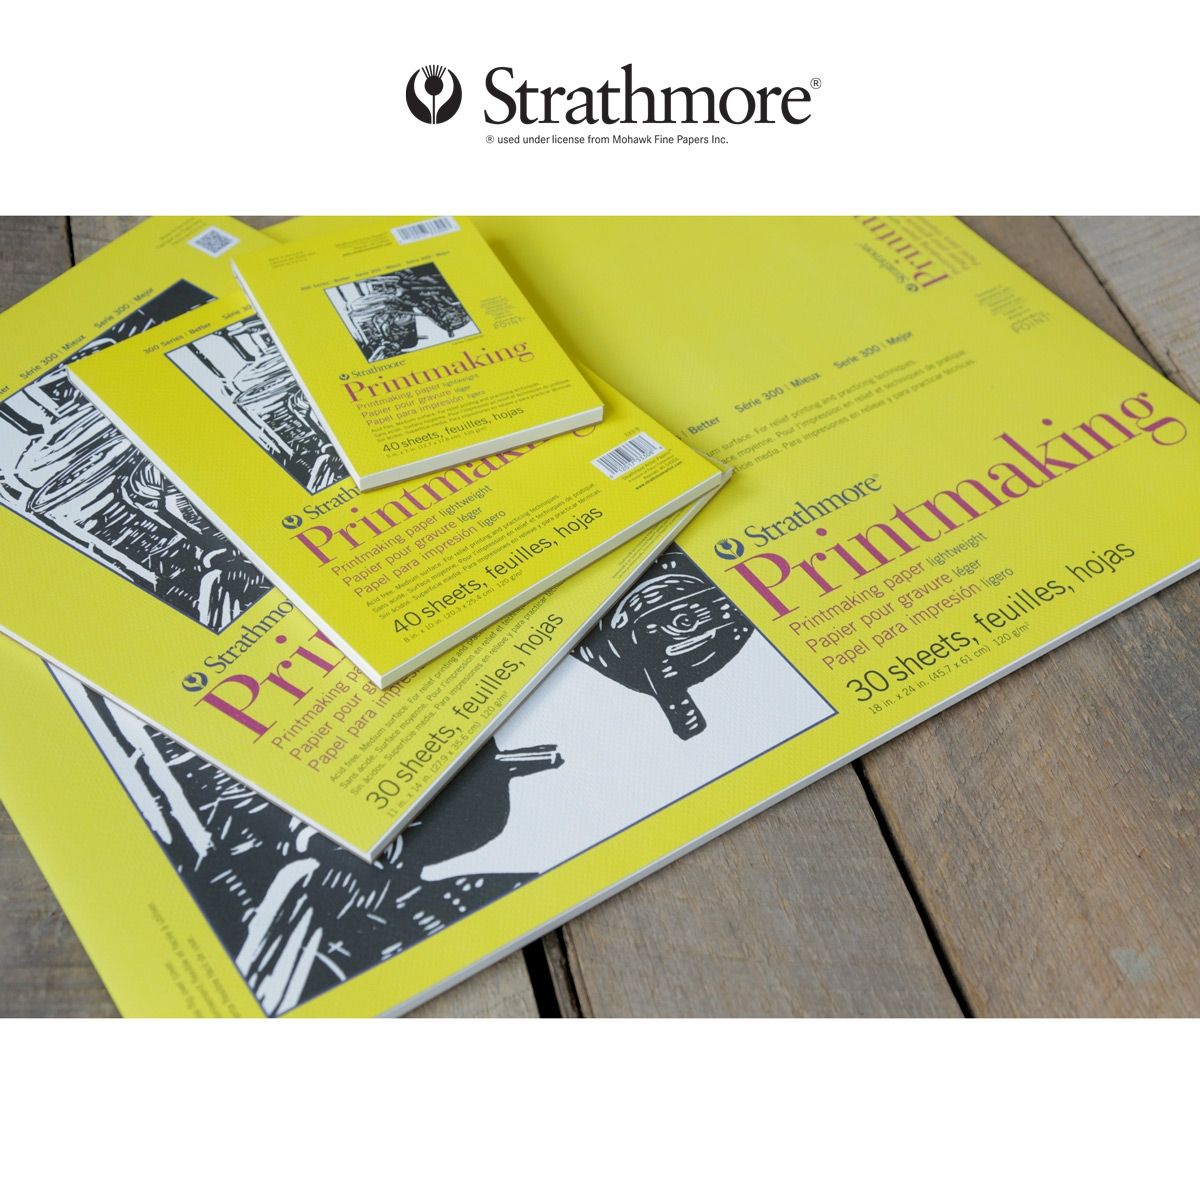 Strathmore 400 Series Printmaking Paper